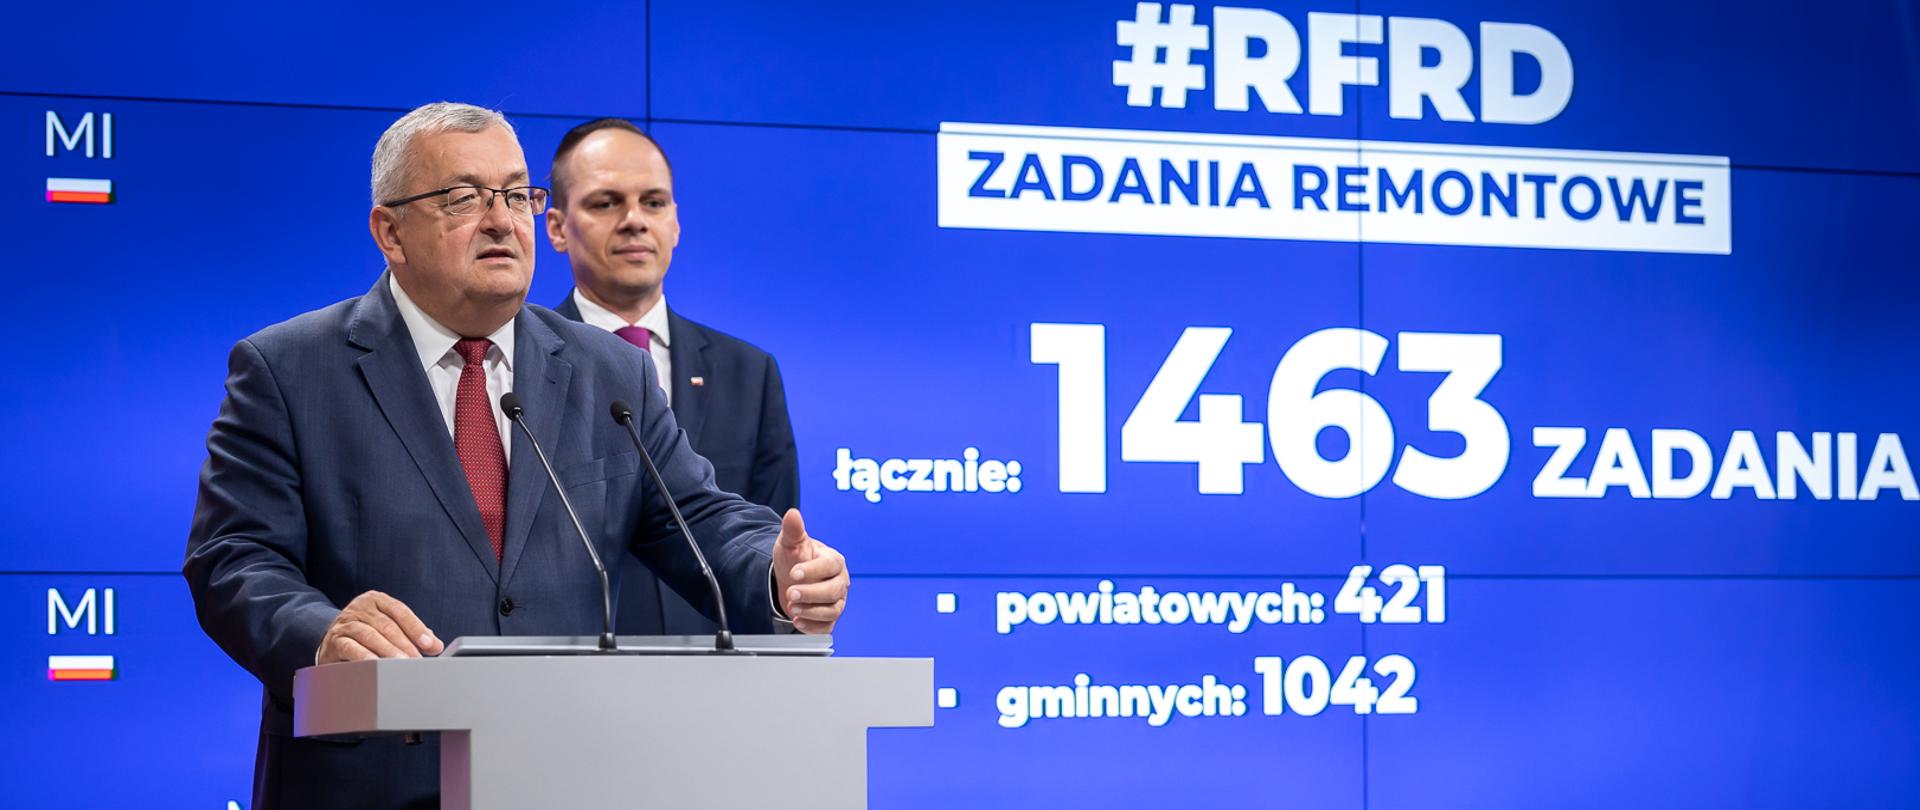 Minister infrastruktury Andrzej Adamczyk oraz wiceminister infrastruktury Rafał Weber podczas konferencji, której tematem były zadania remontowe przeznaczone do dofinansowania w ramach Rządowego Funduszu Rozwoju Dróg na 2023 rok.